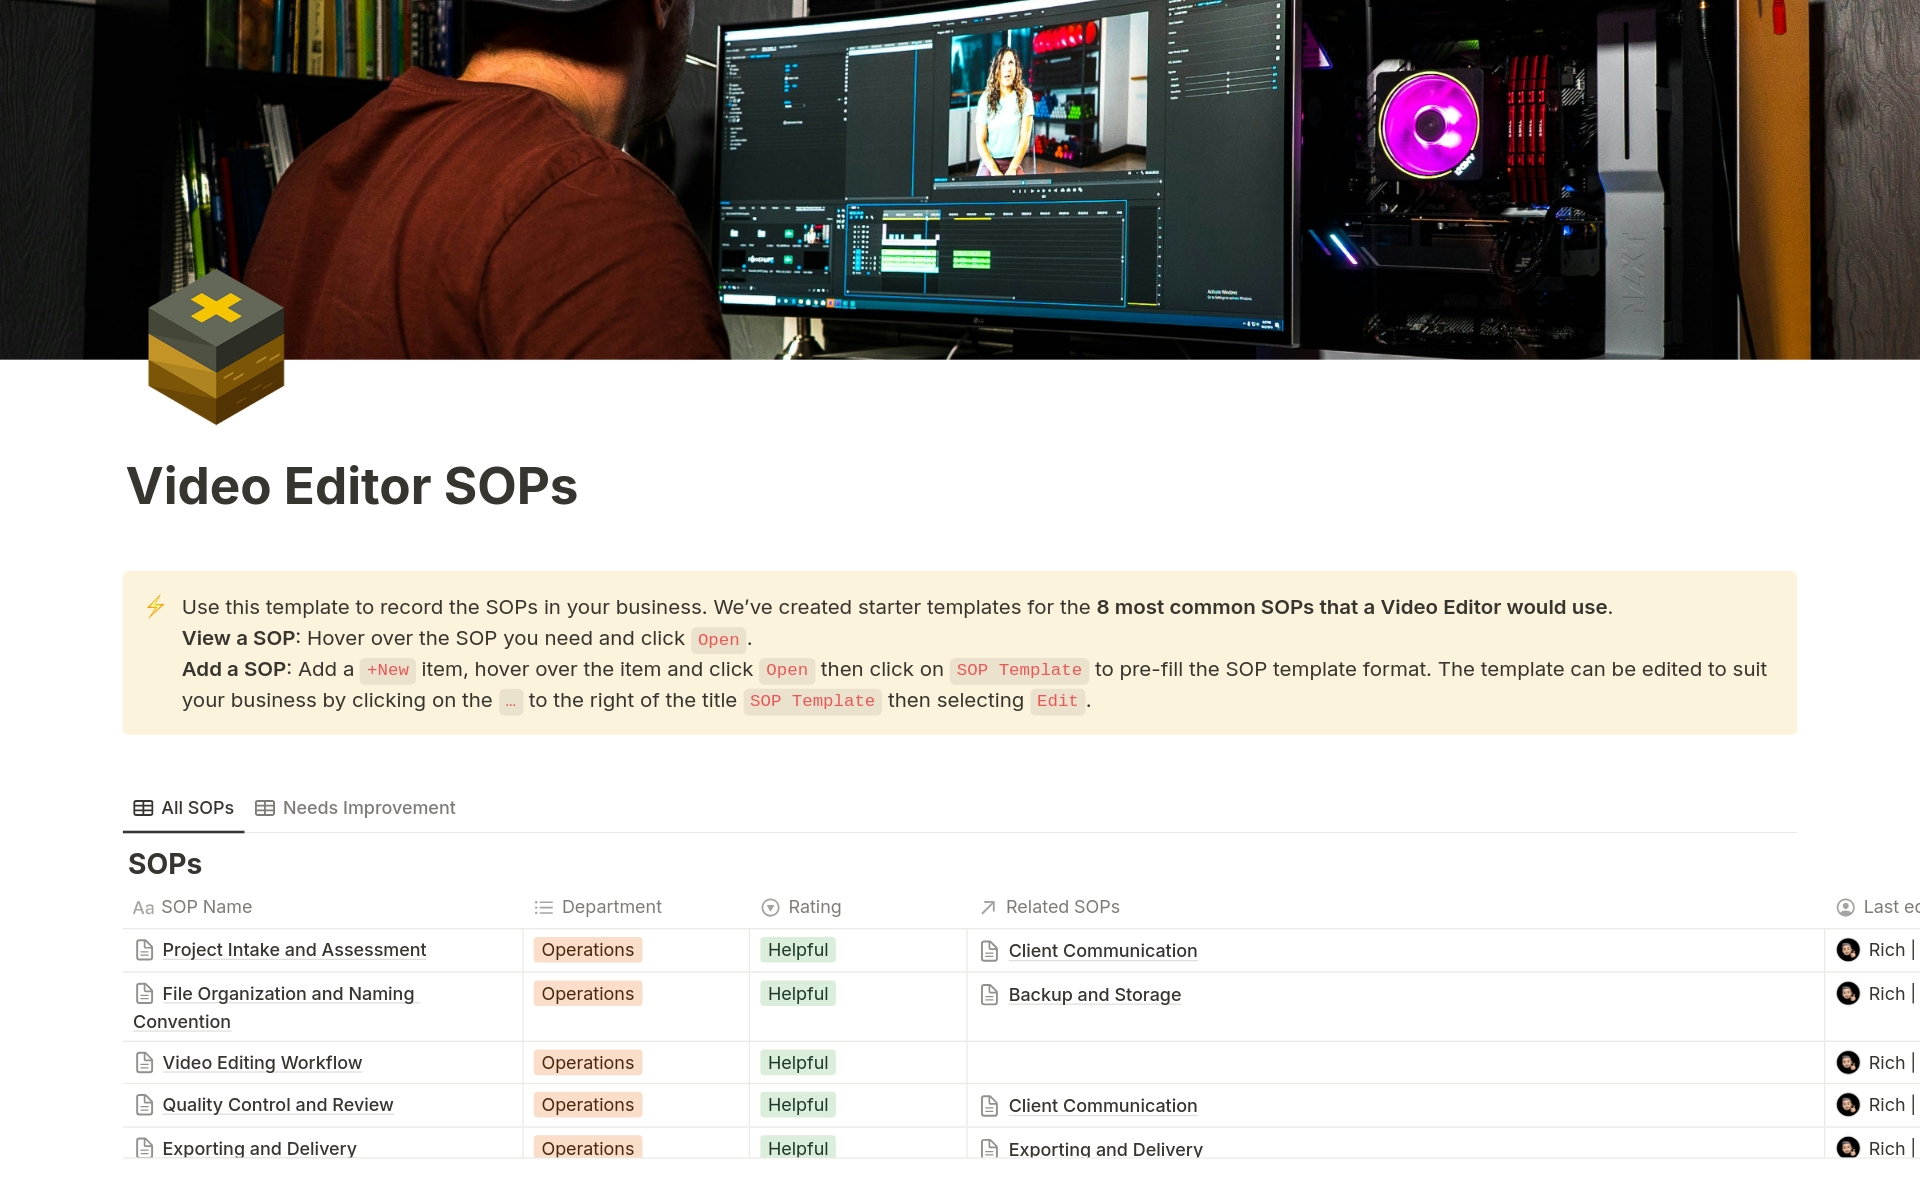 Vista previa de una plantilla para Video Editor SOPs